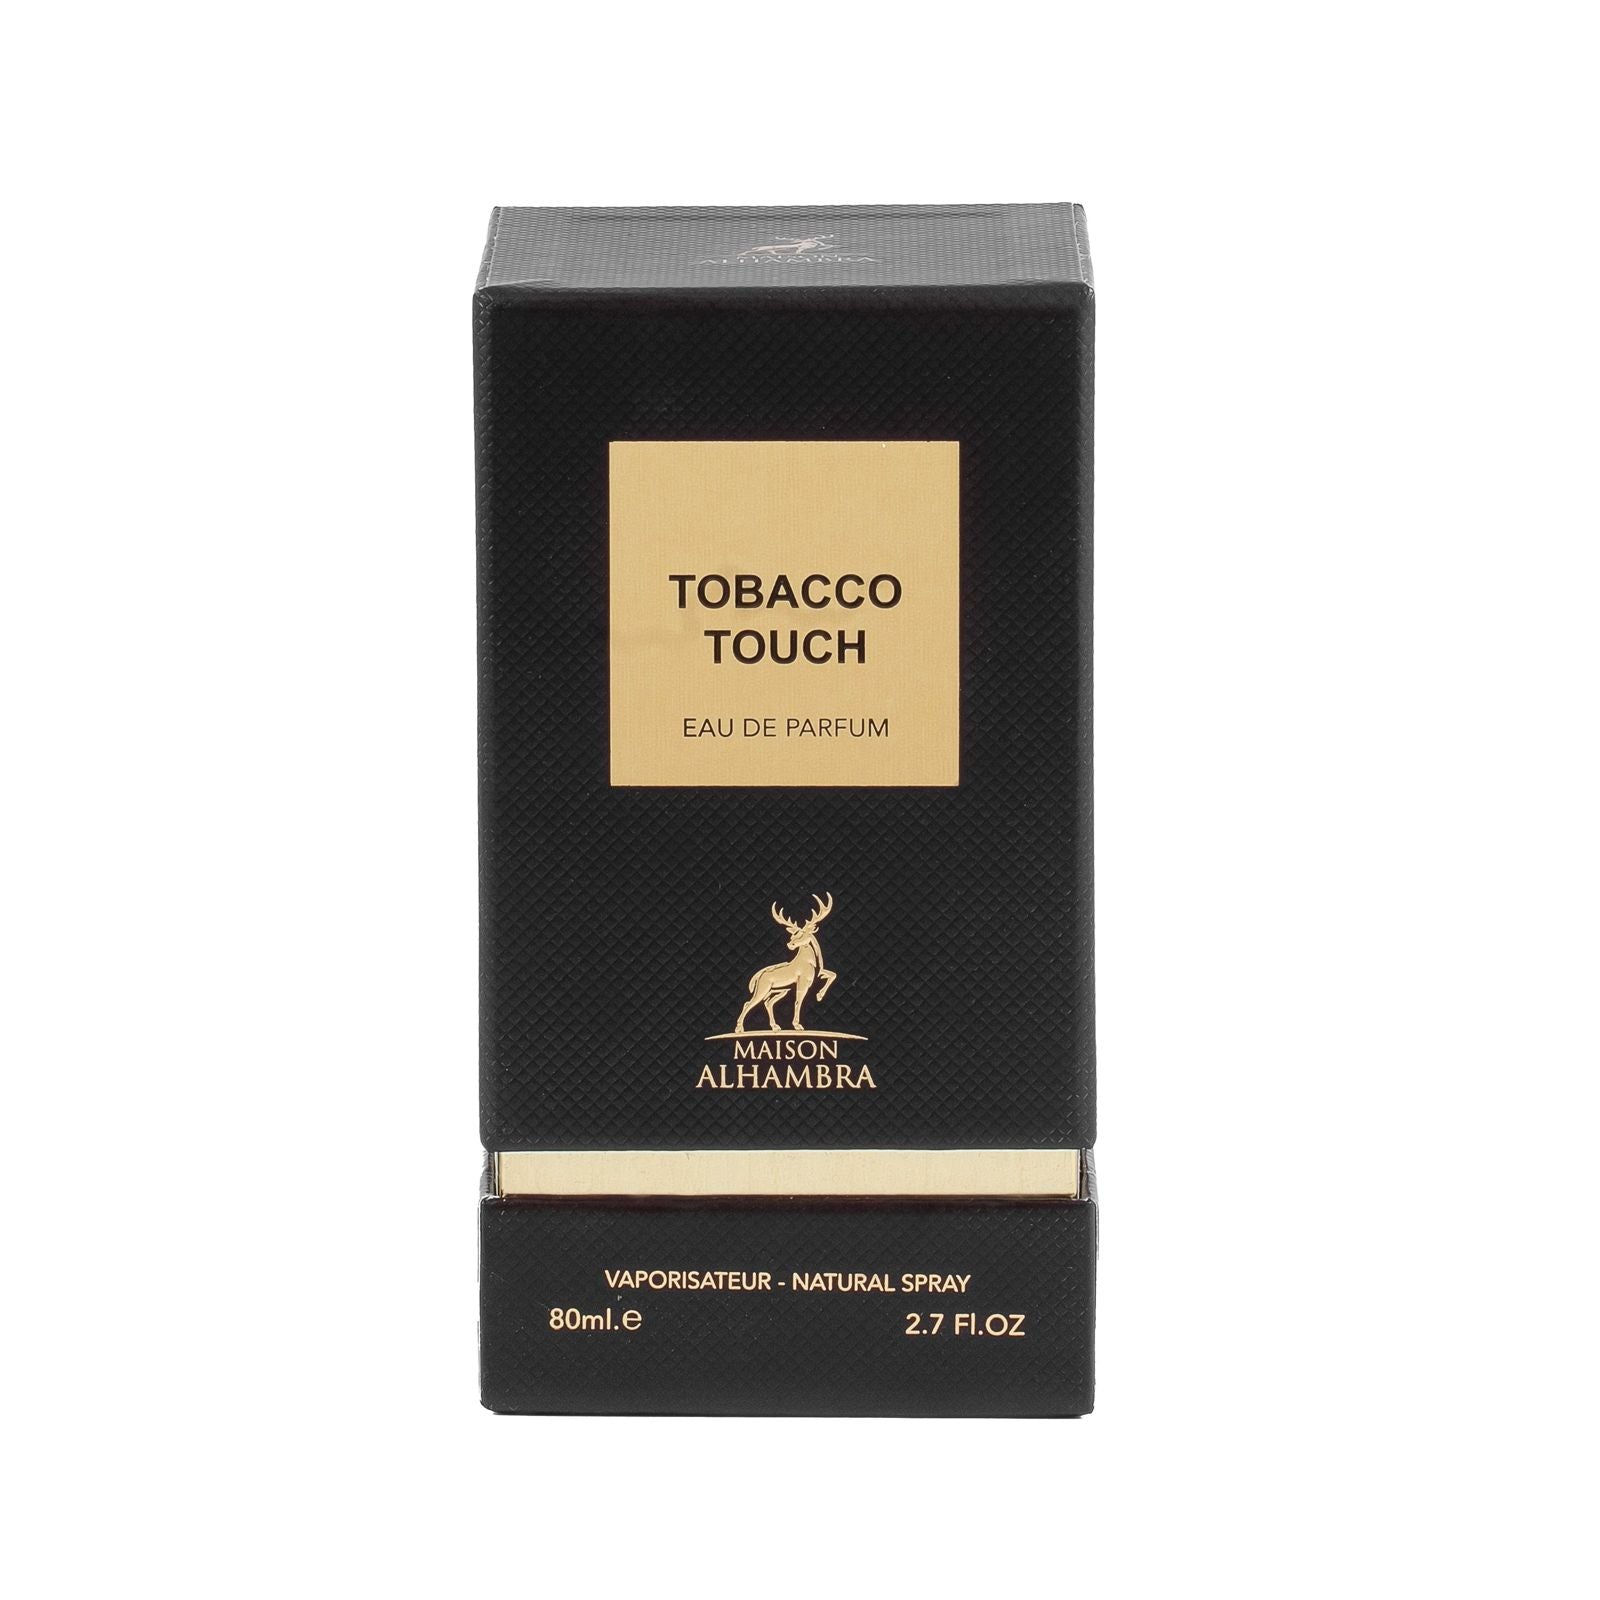 Tobacco Touch Eau De Parfum 80ml 2.7 FL OZ By Maison Alhambra Lattafa ...